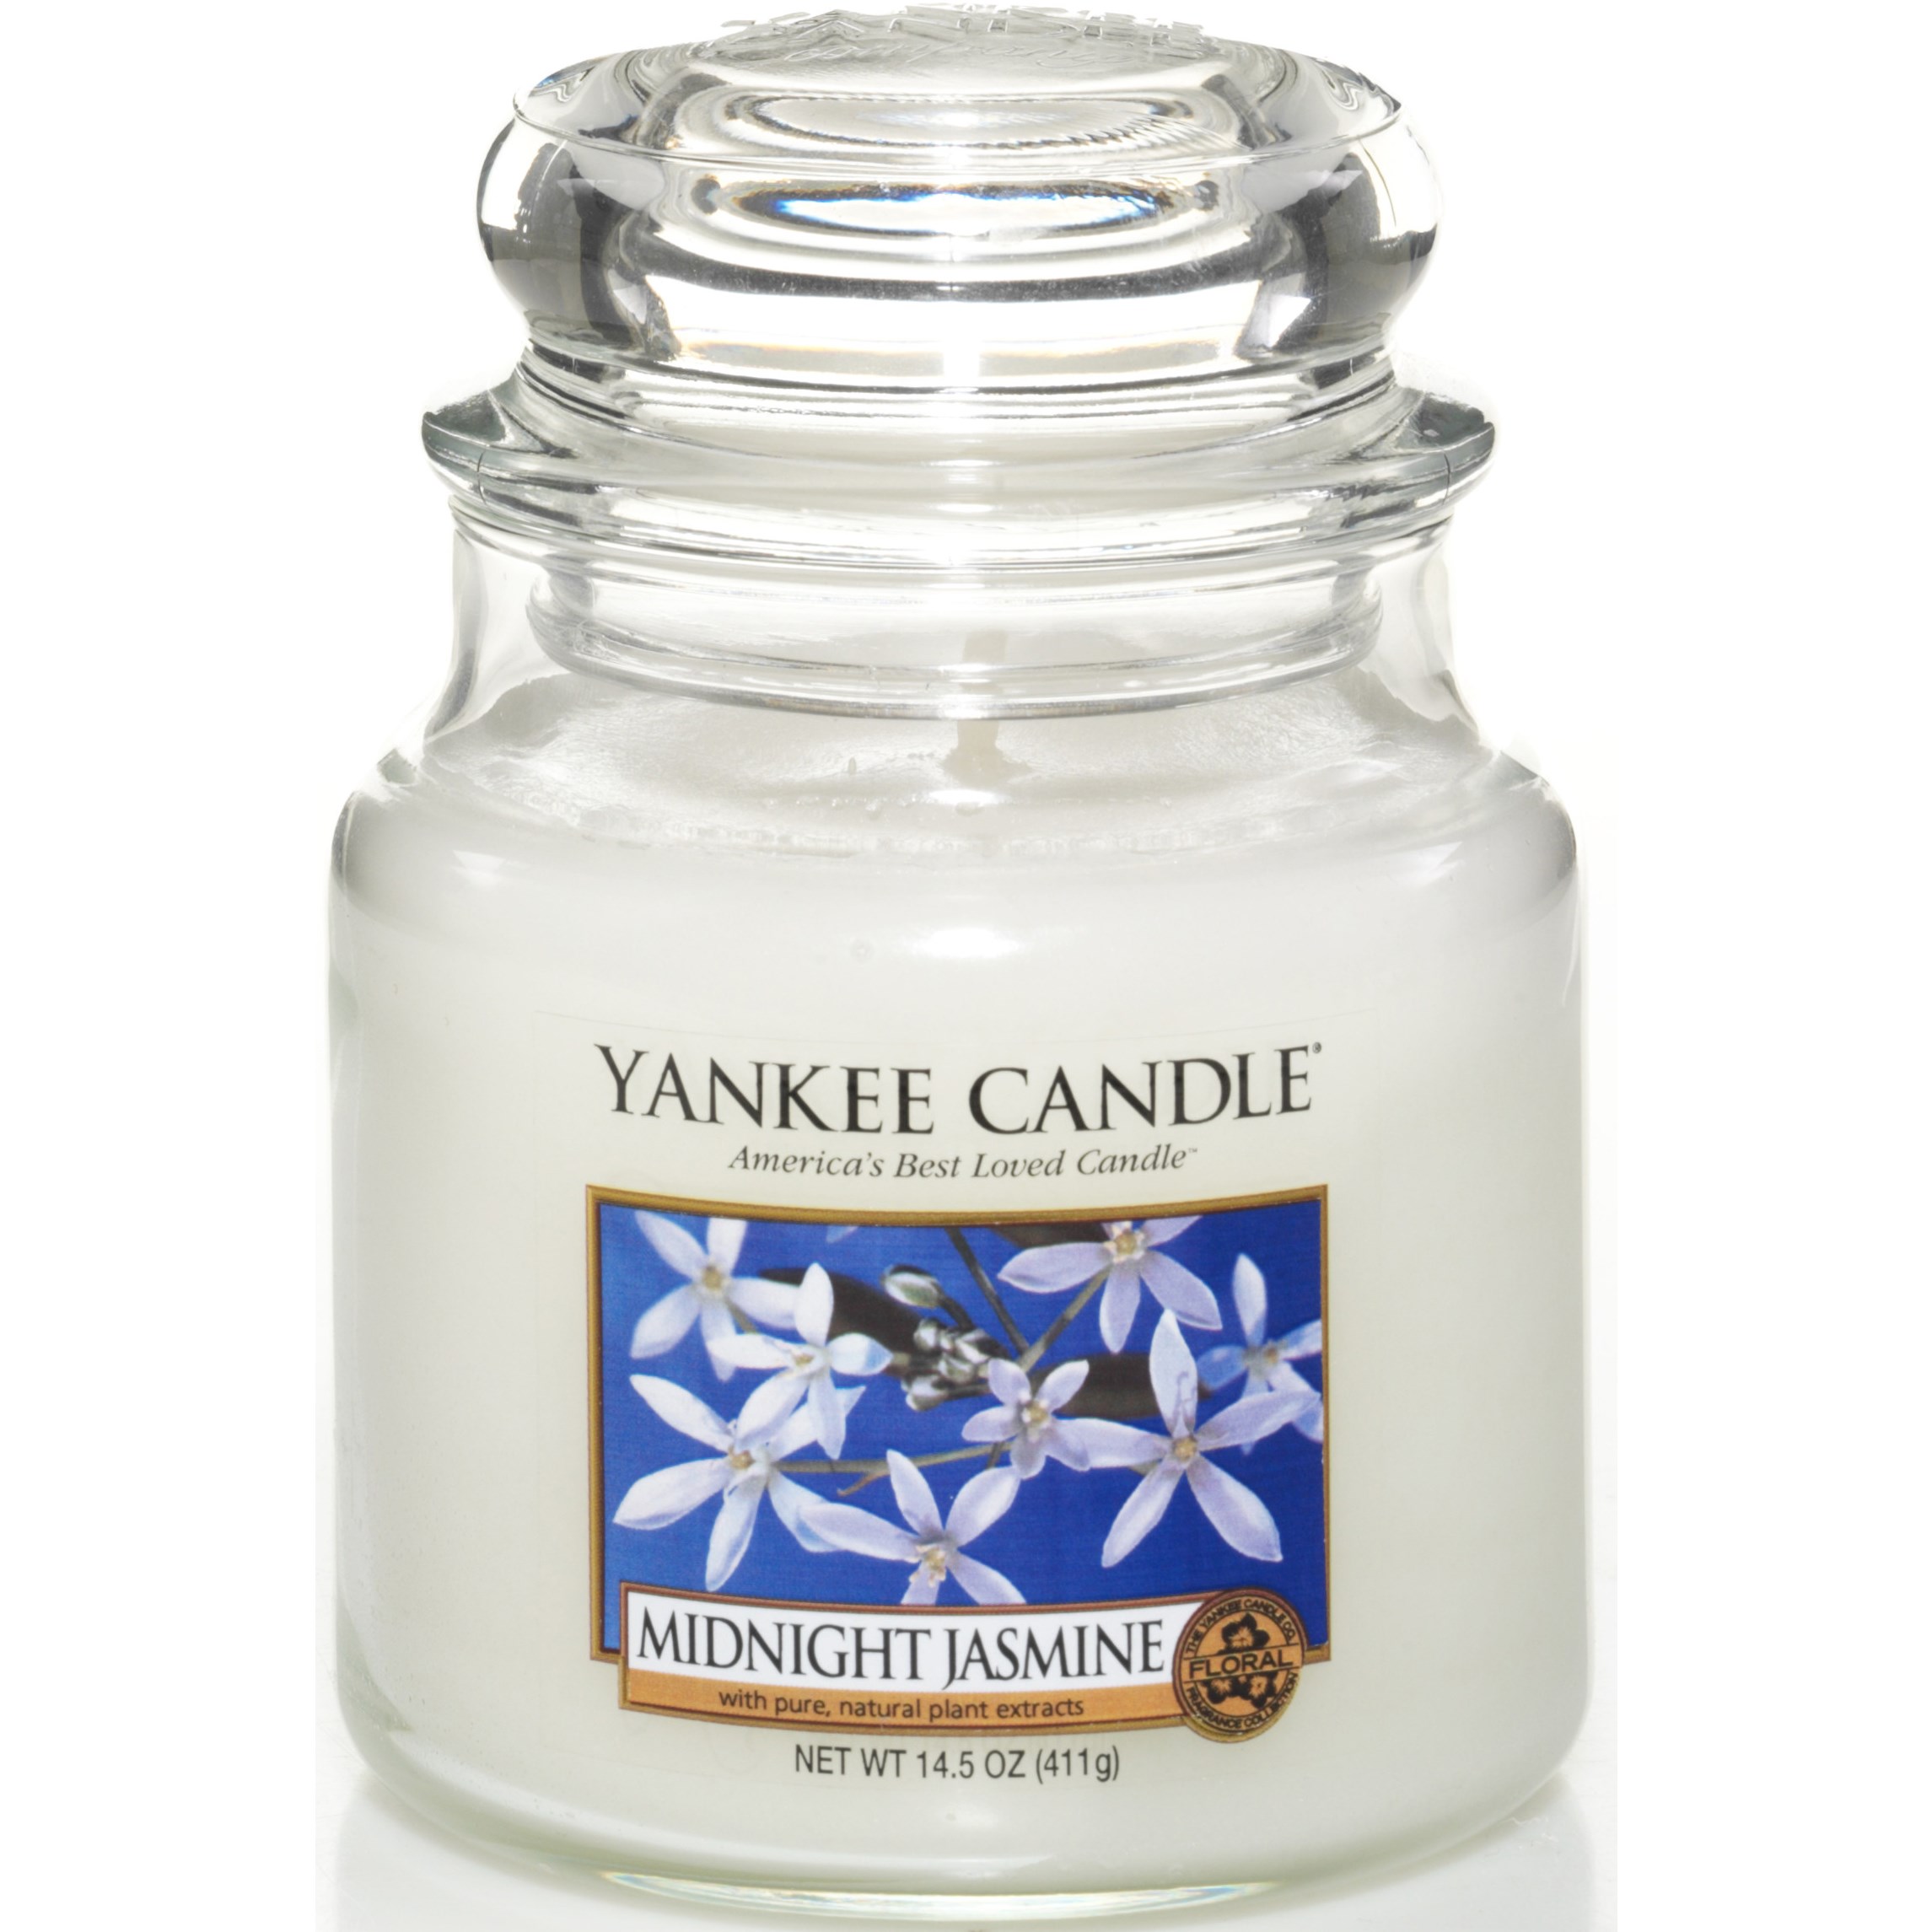 Yankee Candle Midnight Jasmine Medium Jar